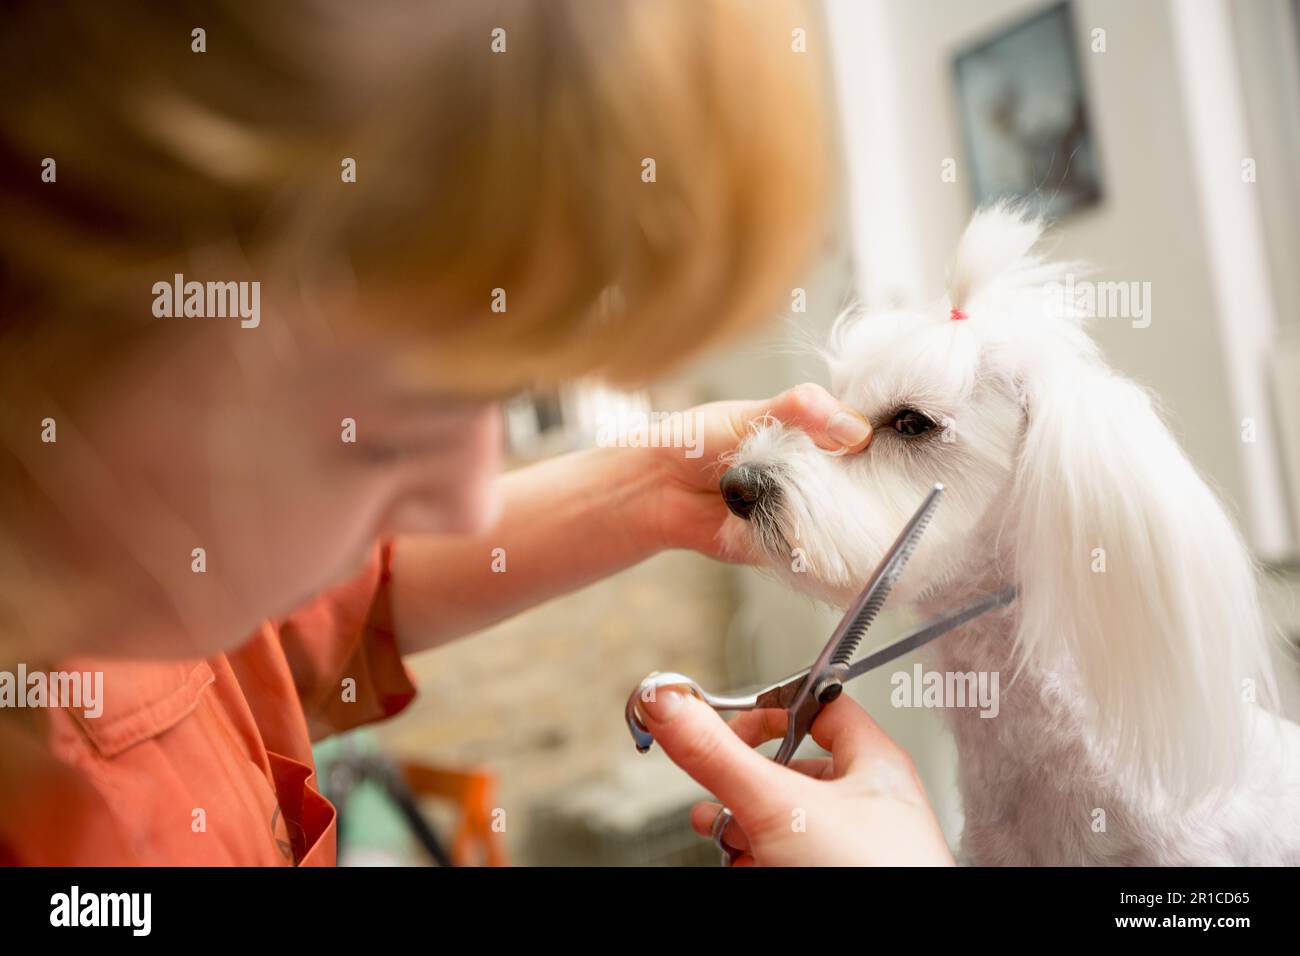 Groomer usare le forbici per tagliare cane hair.Dog ottiene i capelli tagliati a PET Spa Grooming Salon. Primo piano di cane. il cane ha un taglio di capelli. Groomer in background. groome Foto Stock